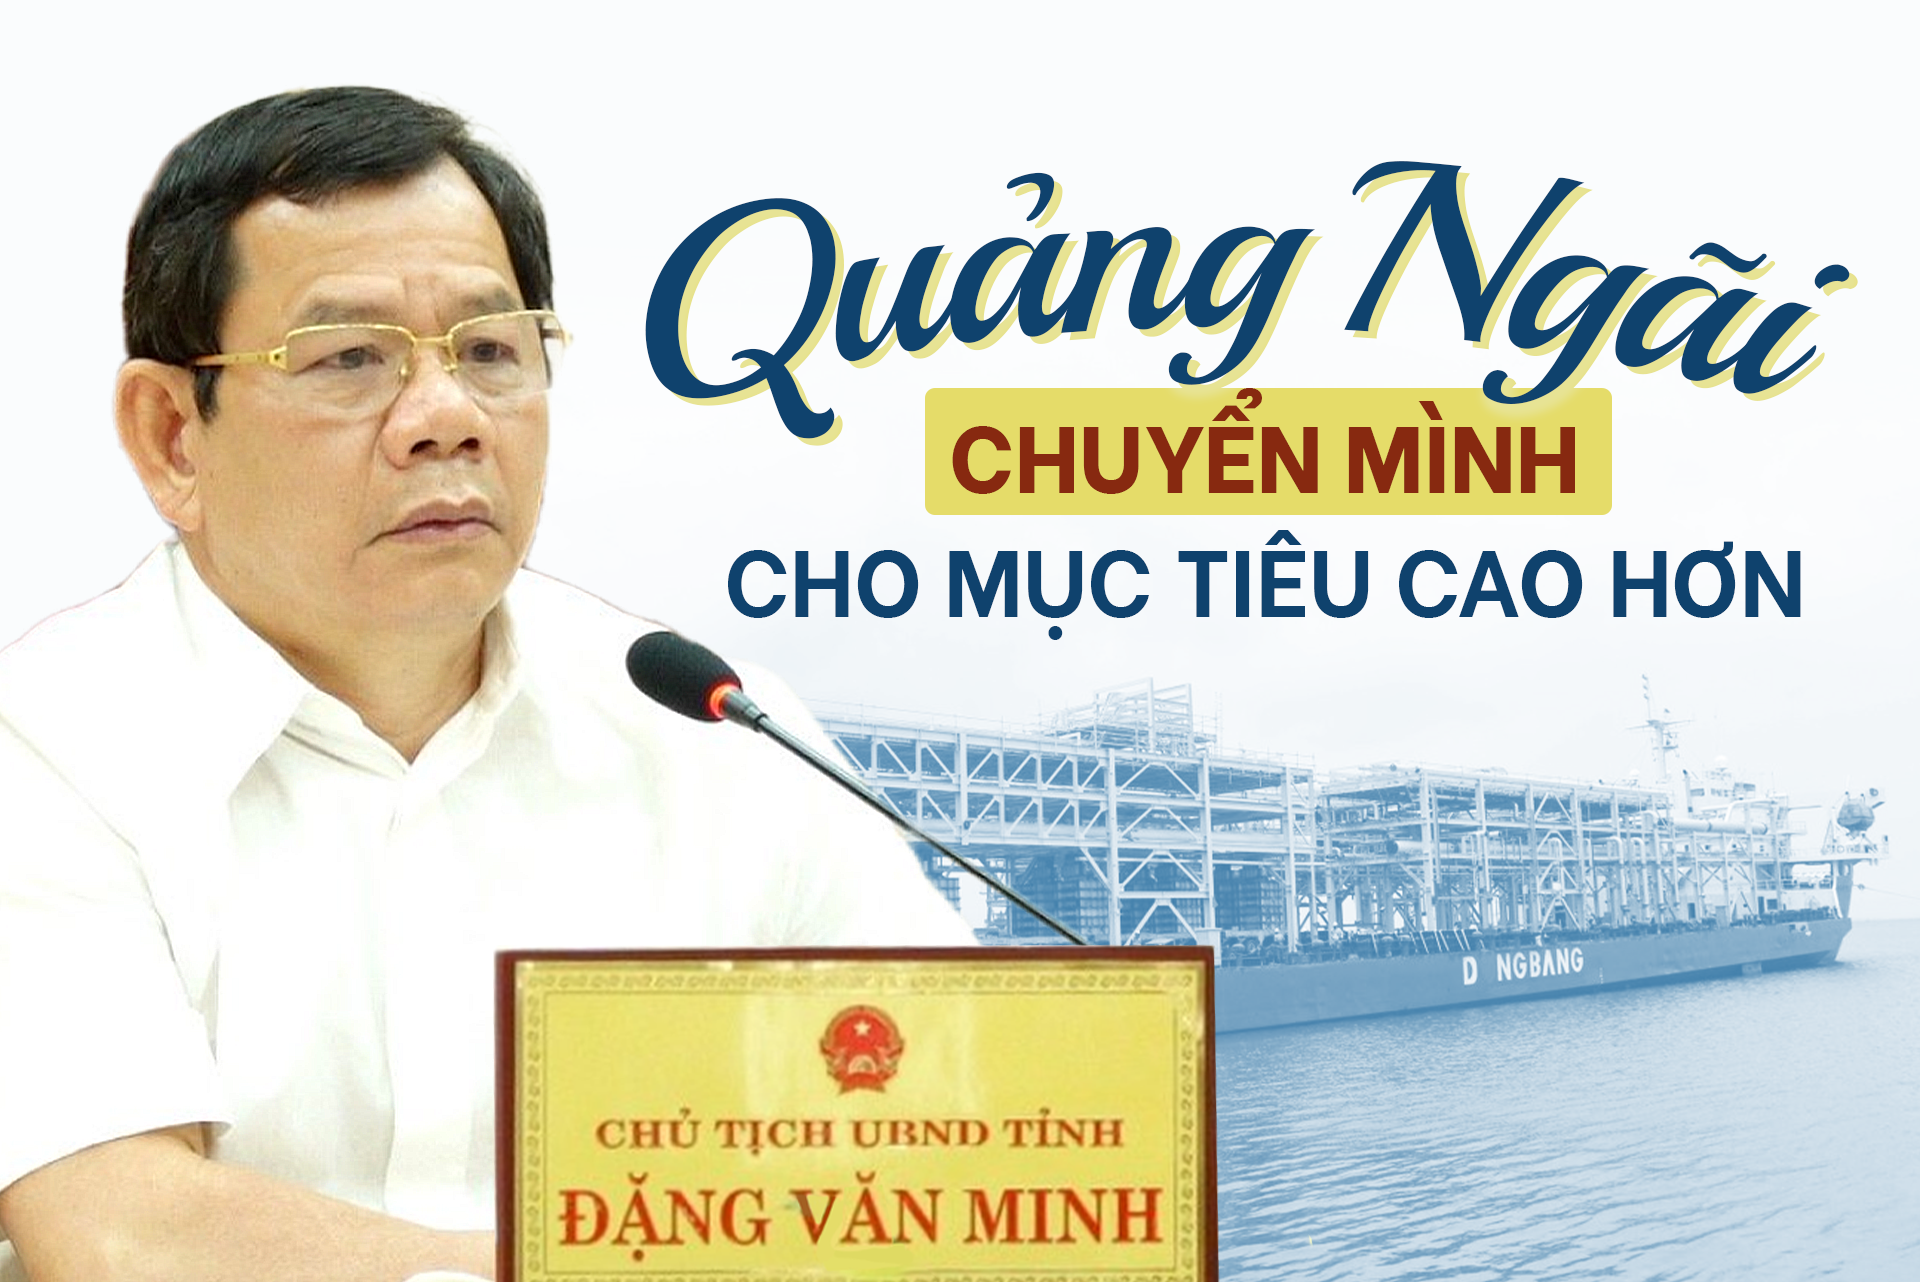 Chủ tịch UBND Quảng Ngãi: Chuyển mình cho mục tiêu cao hơn